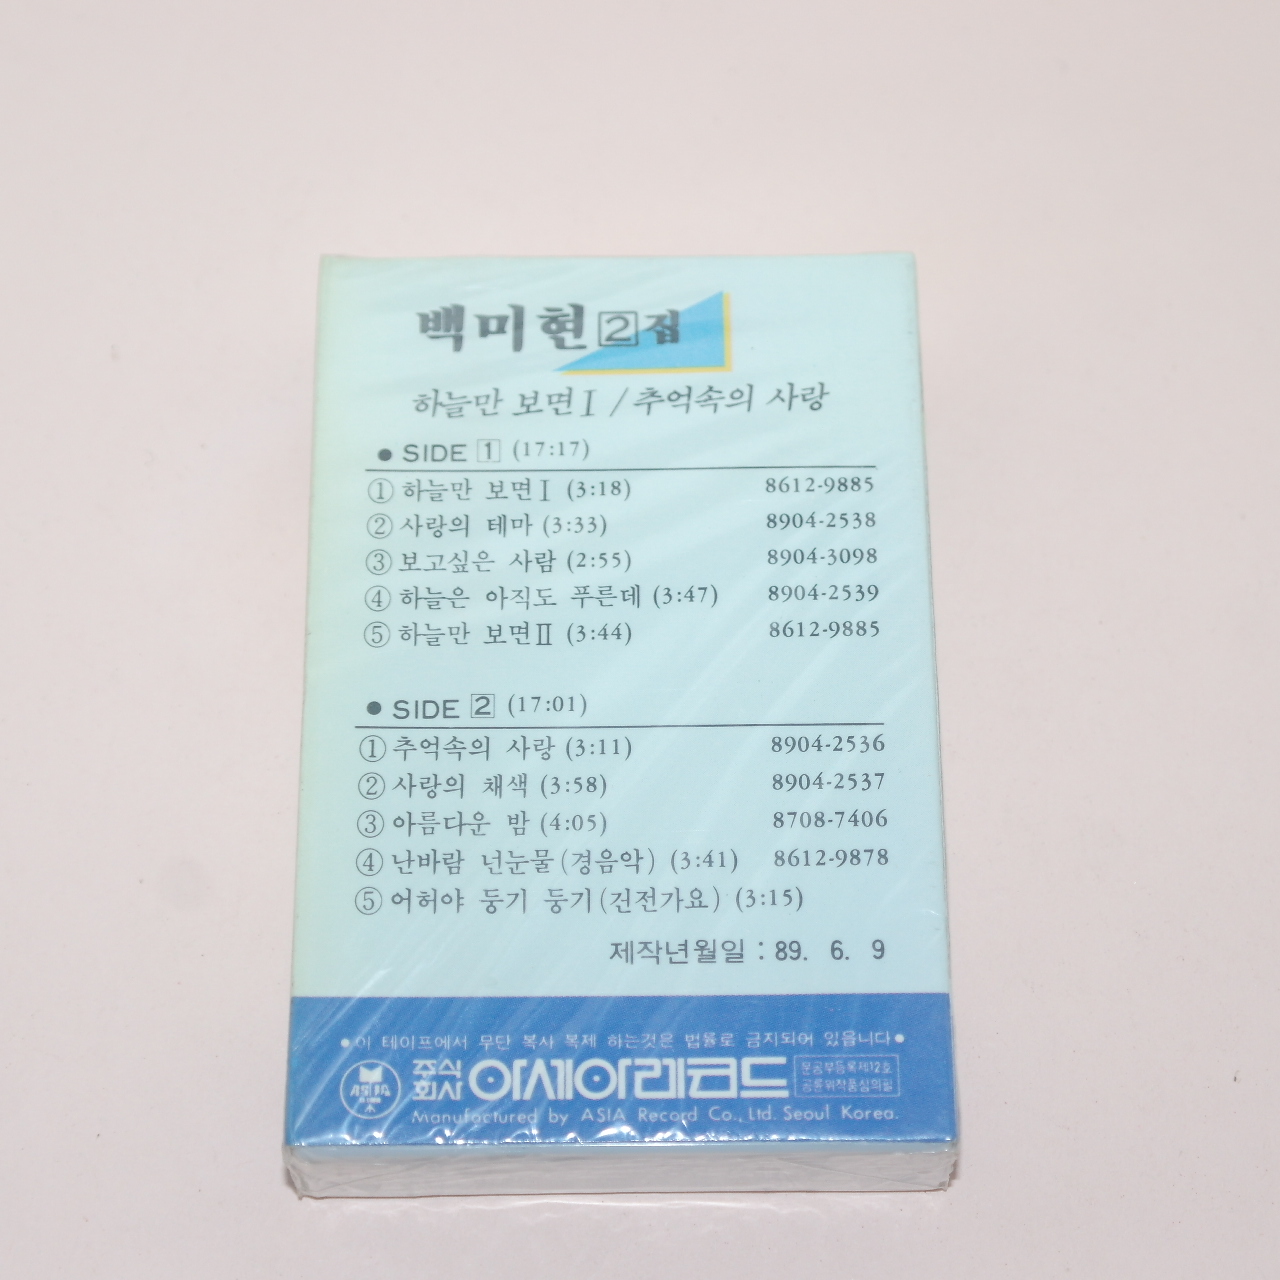 155-근대사 미개봉 테이프 백미현 2집